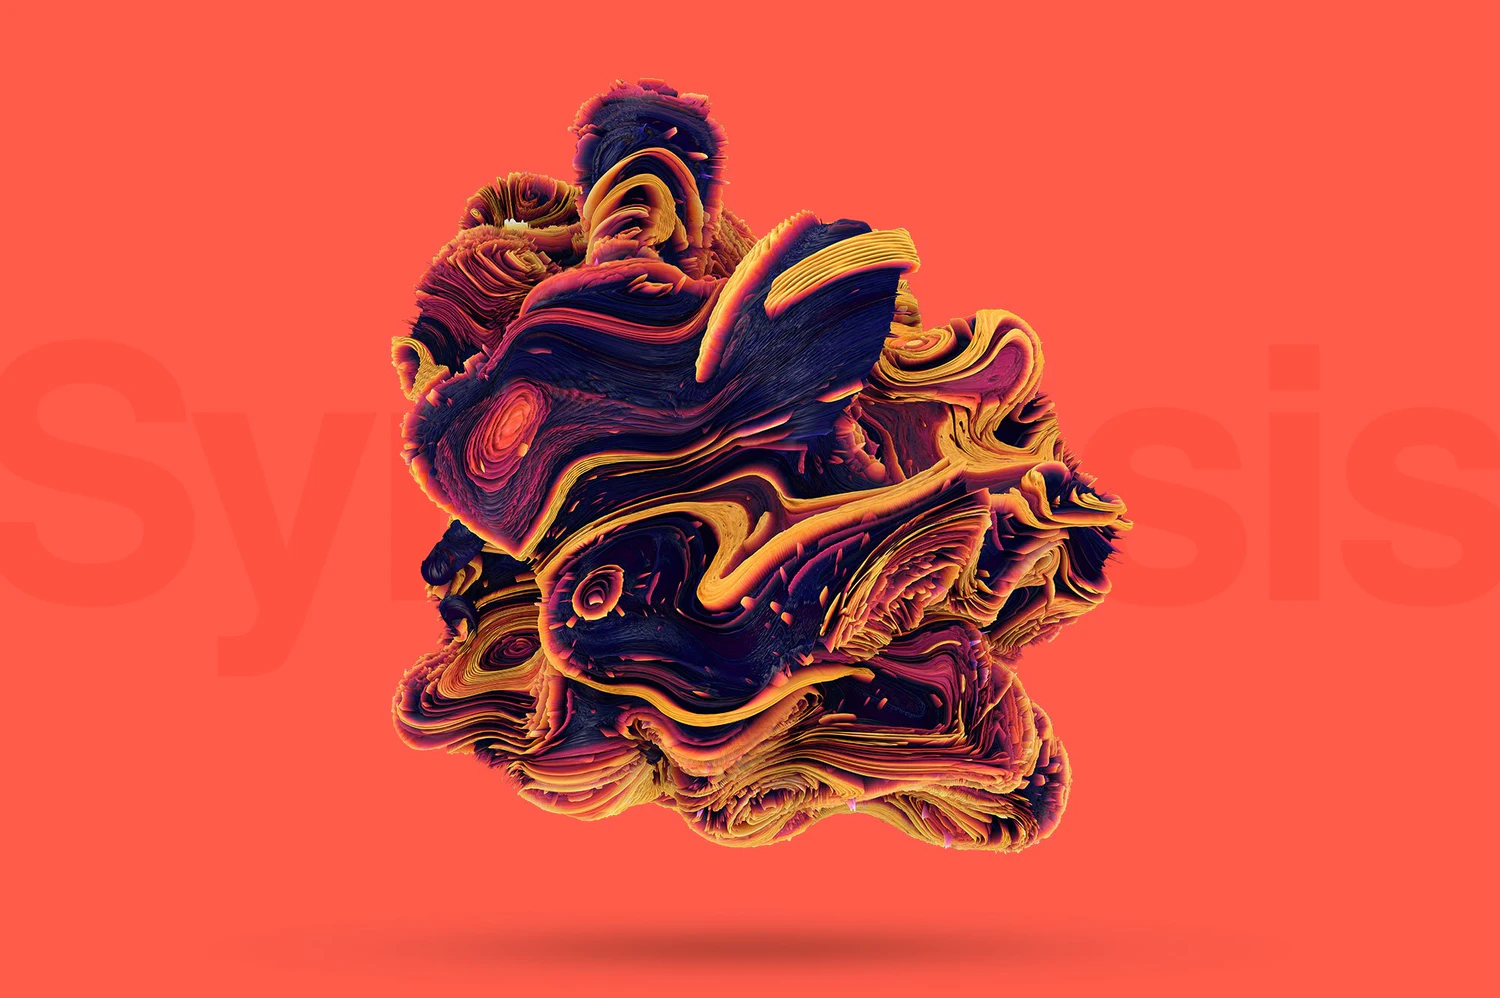 5212 15张高清3D抽象艺术爆炸流体背景图片素材丙烯纹理包装设计音乐会海报专辑艺术背景素材 Synthesis Mind-bending Shapes@GOOODME.COM